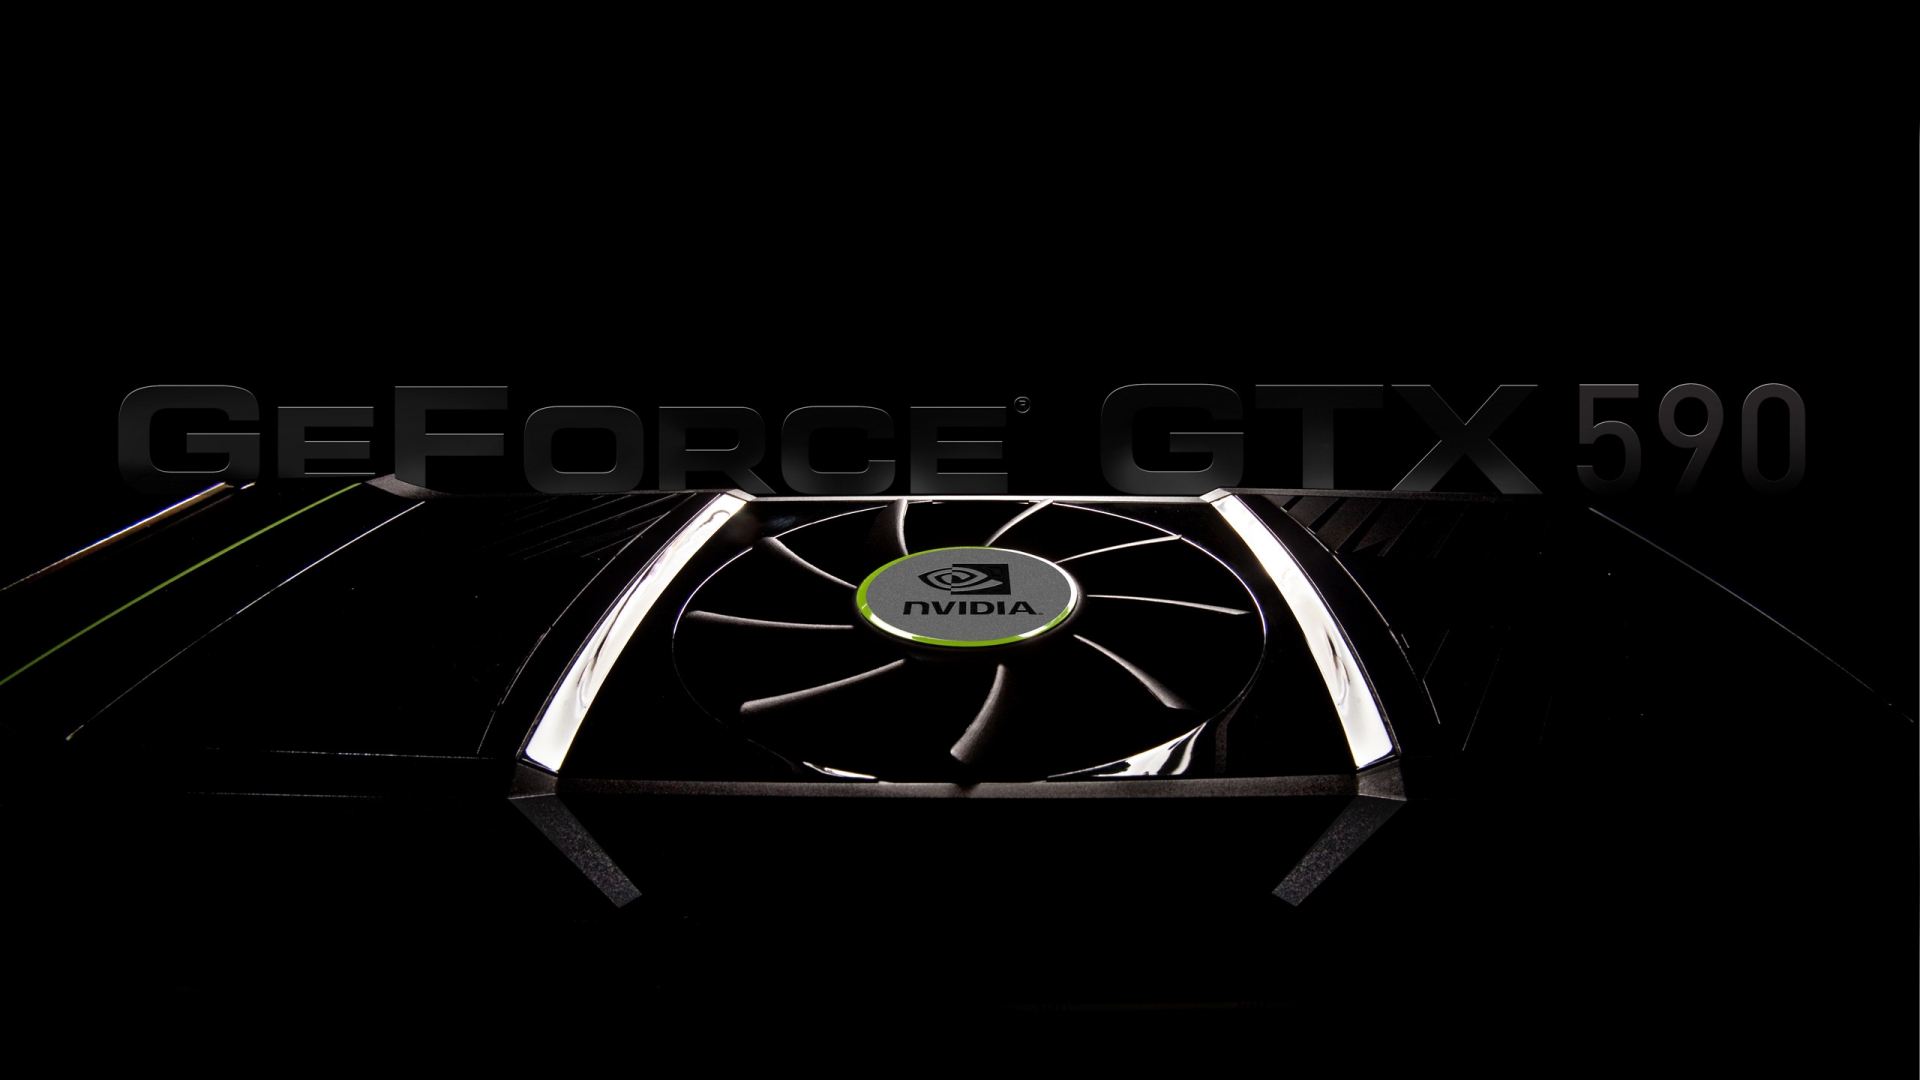 GeForce GTX 590 for 1920 x 1080 HDTV 1080p resolution